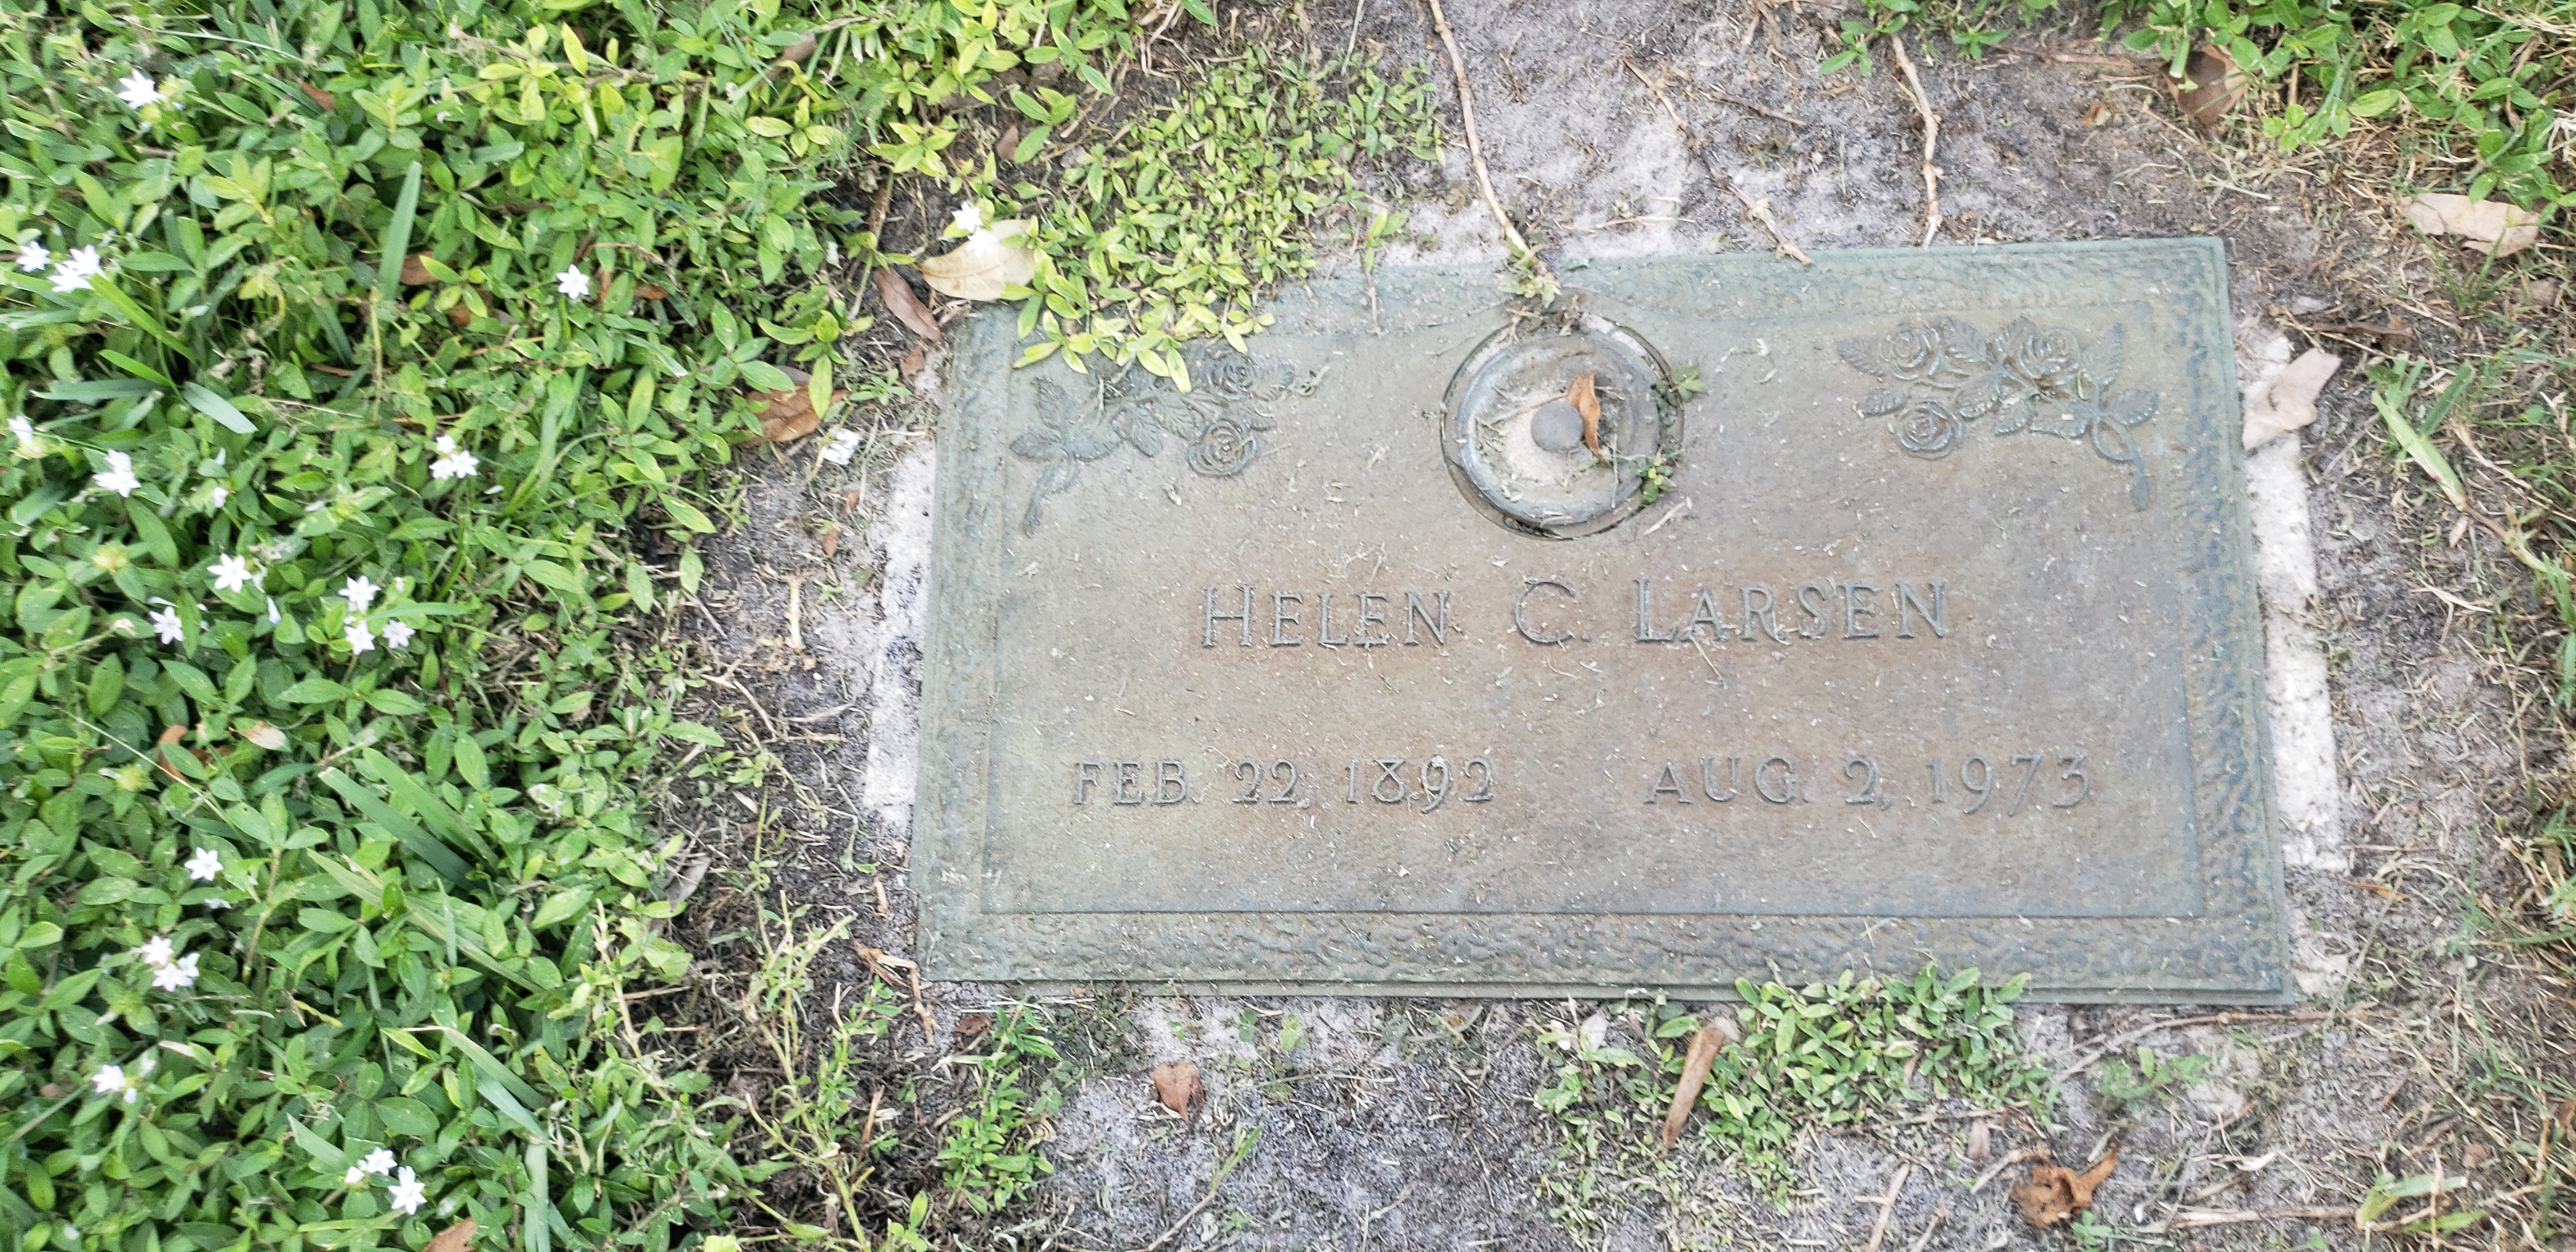 Helen C Larsen